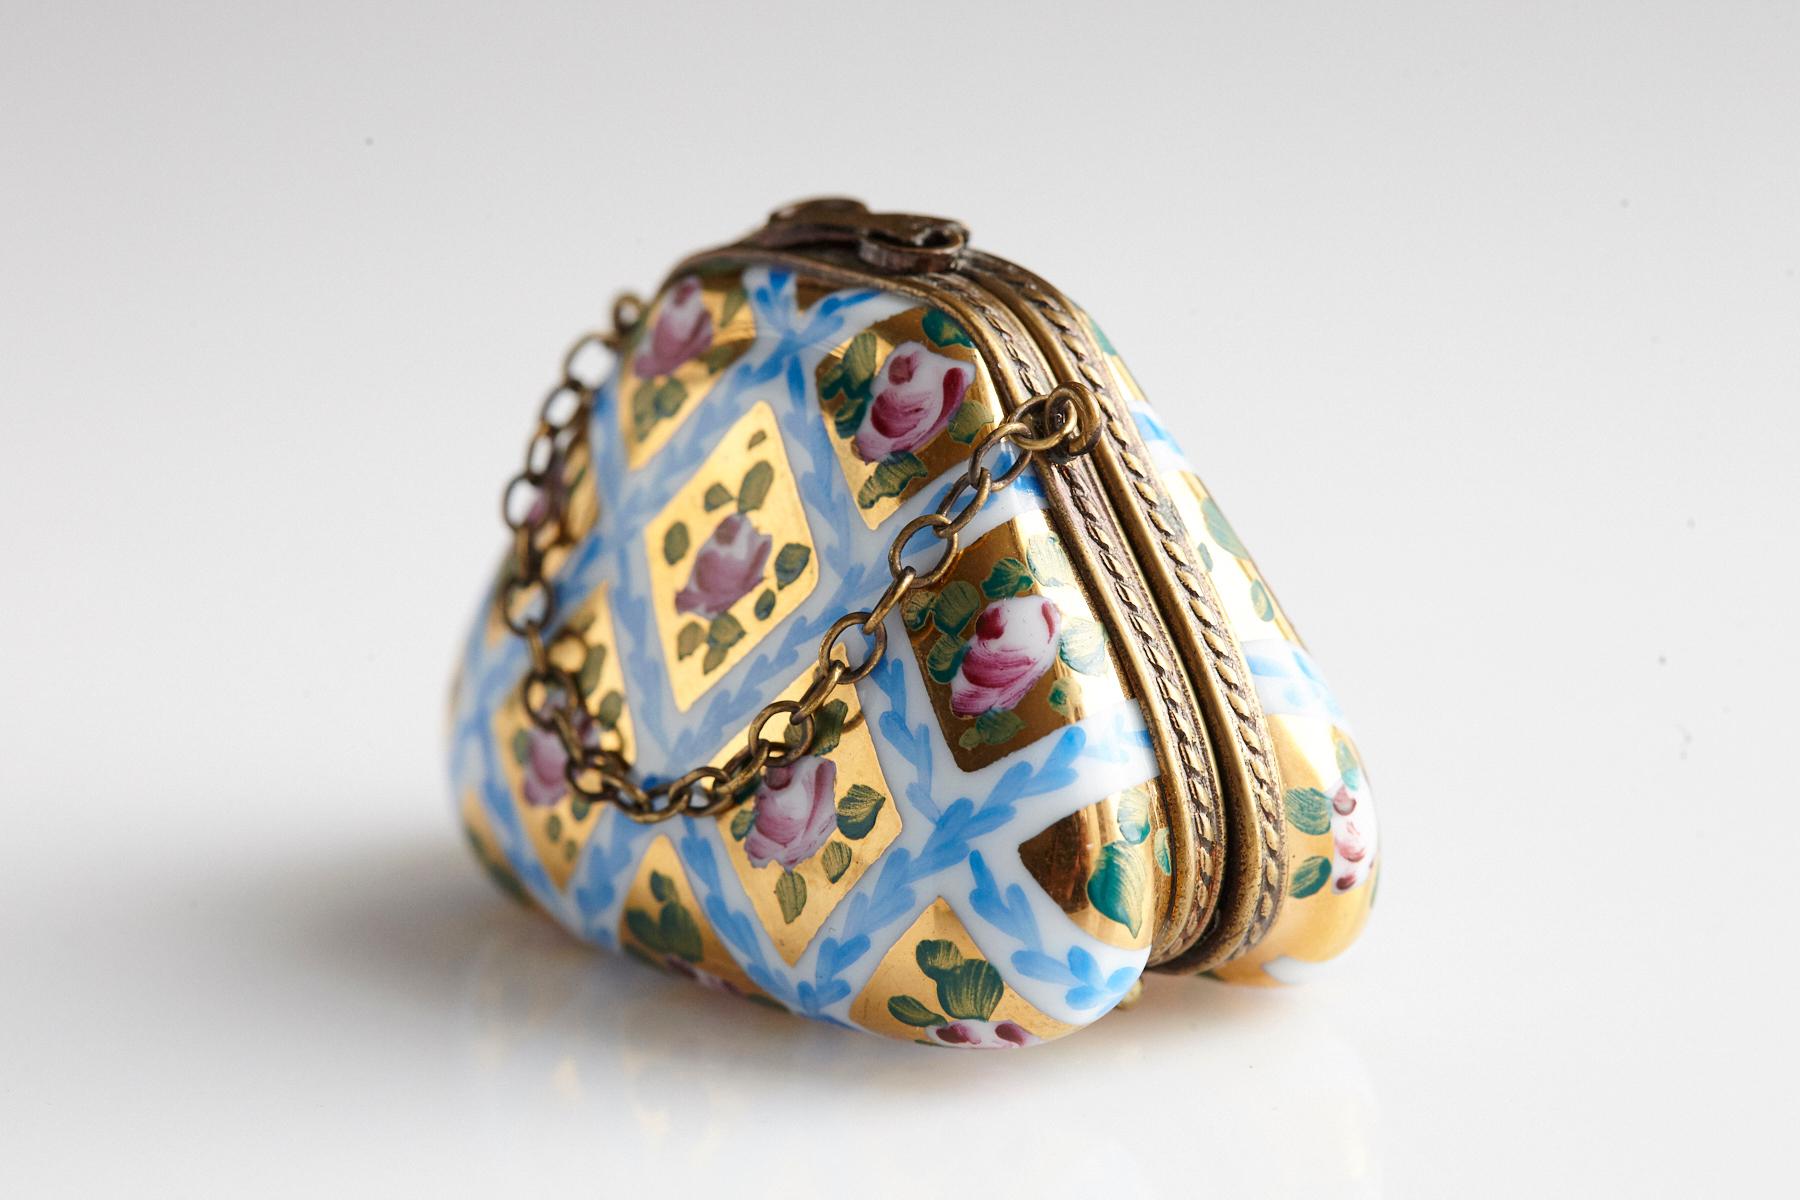 Miniatur-Handtasche aus Limoges-Porzellan mit handbemalten Rosen auf Gold, 1980er Jahre (Französisch)